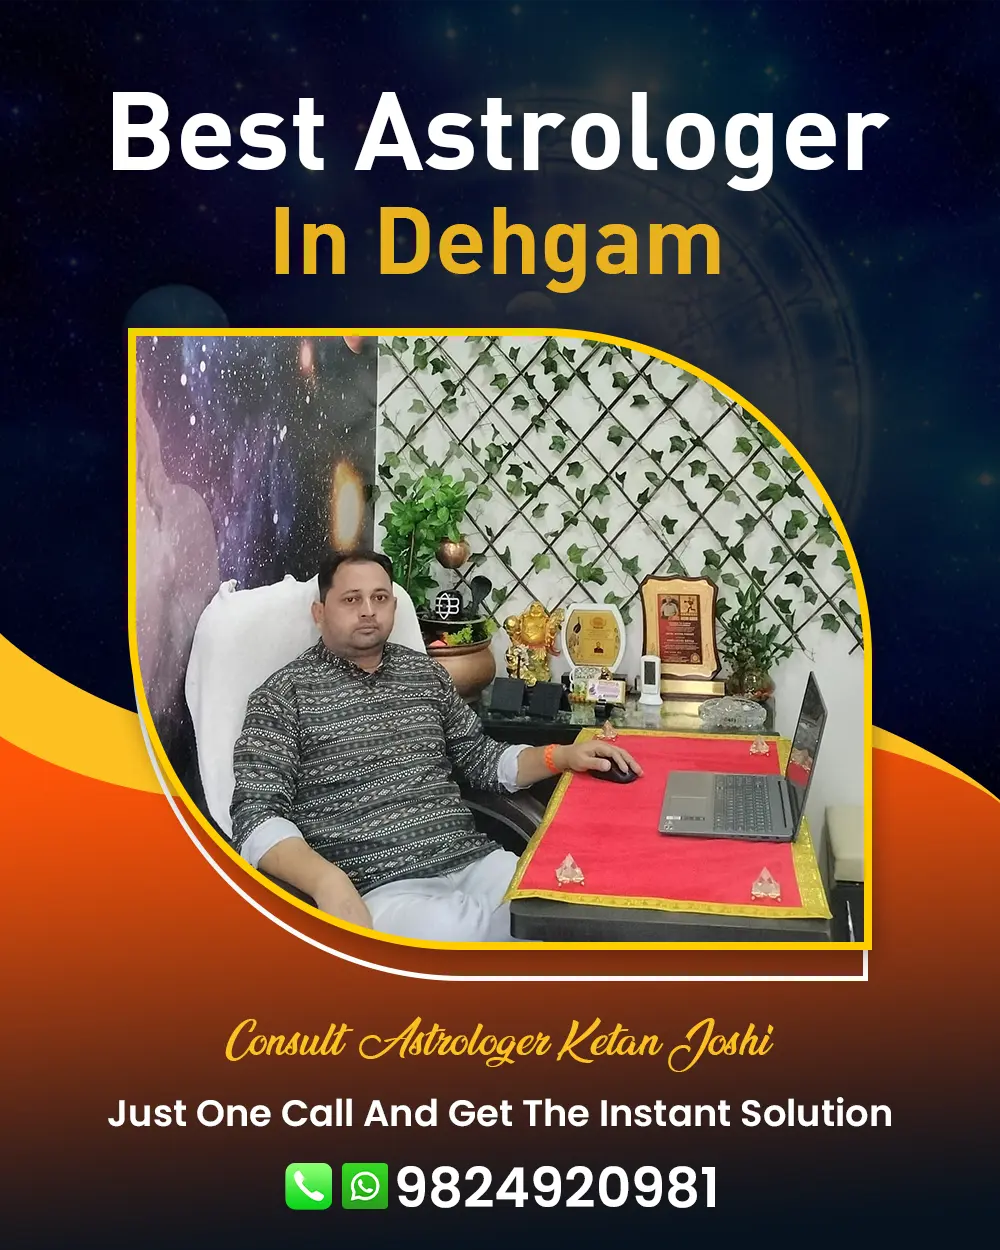 Best Astrologer In Dehgam